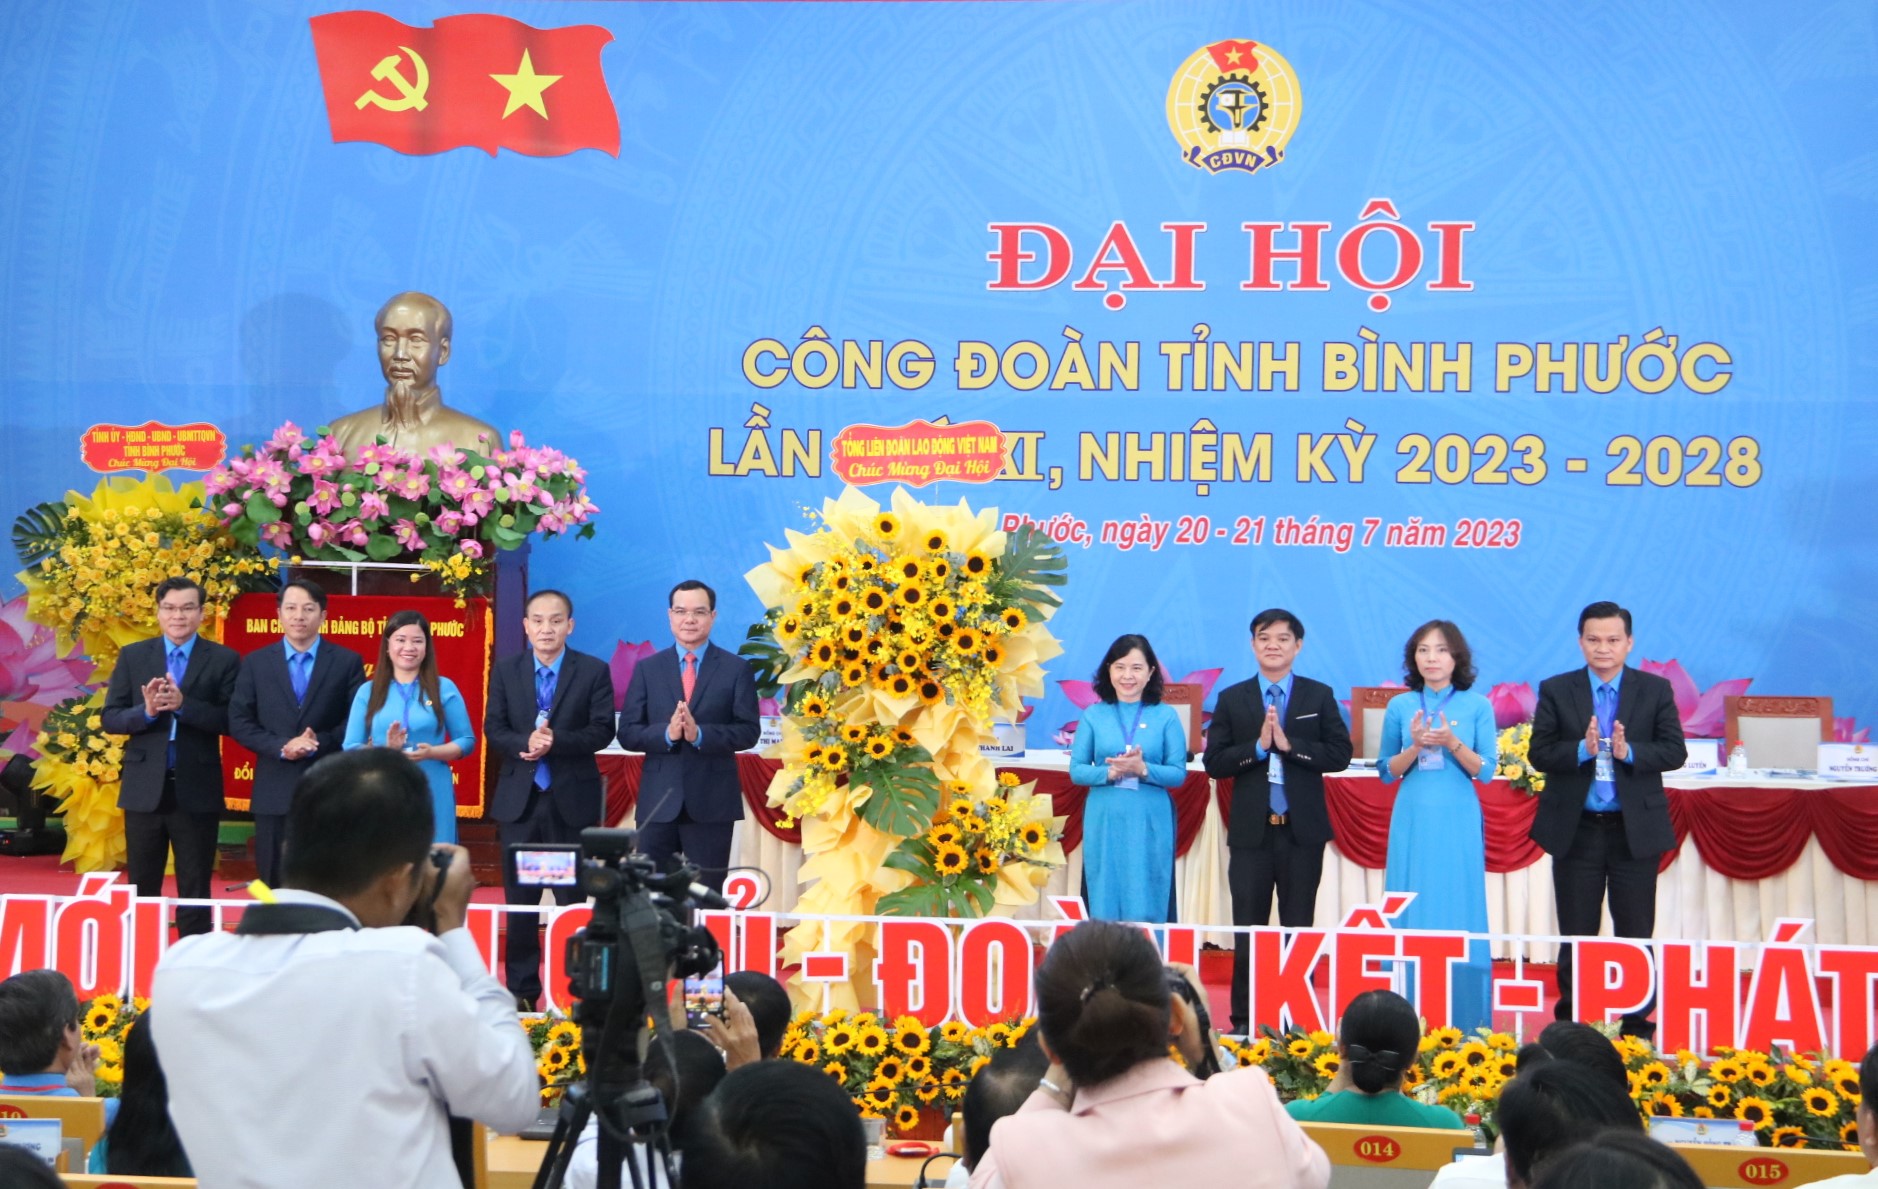 Tổng LĐLĐ Việt Nam tặng hoa cho đại hội.Ảnh: Đình Trọng